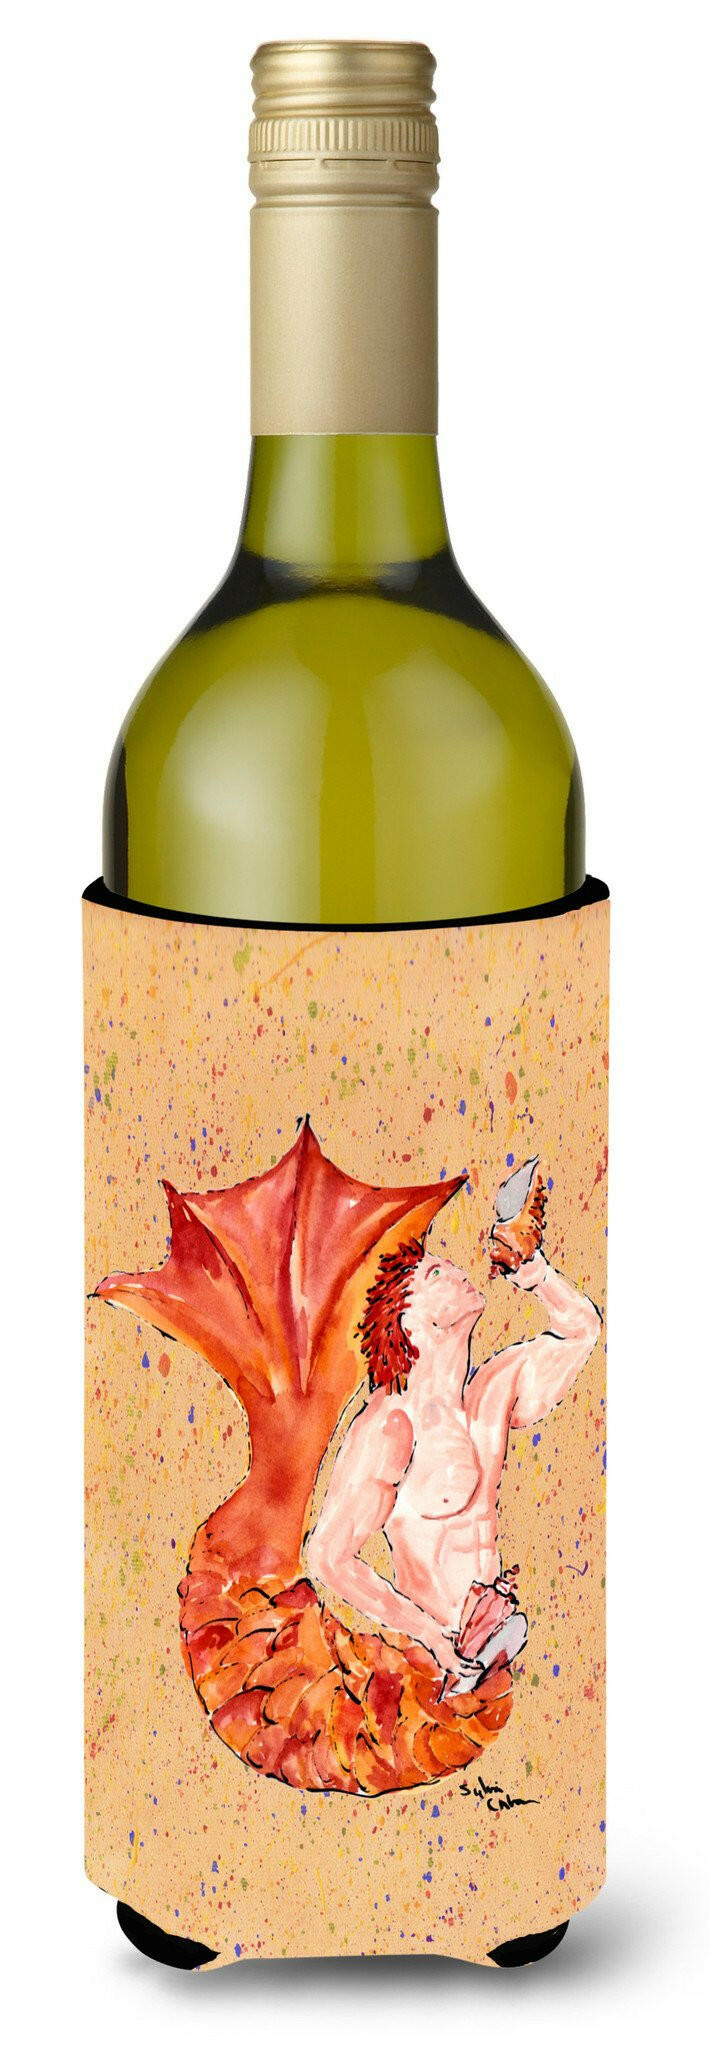 Red Headed Ginger Merman Wine Bottle Beverage Insulator Beverage Insulator Hugger by Caroline's Treasures